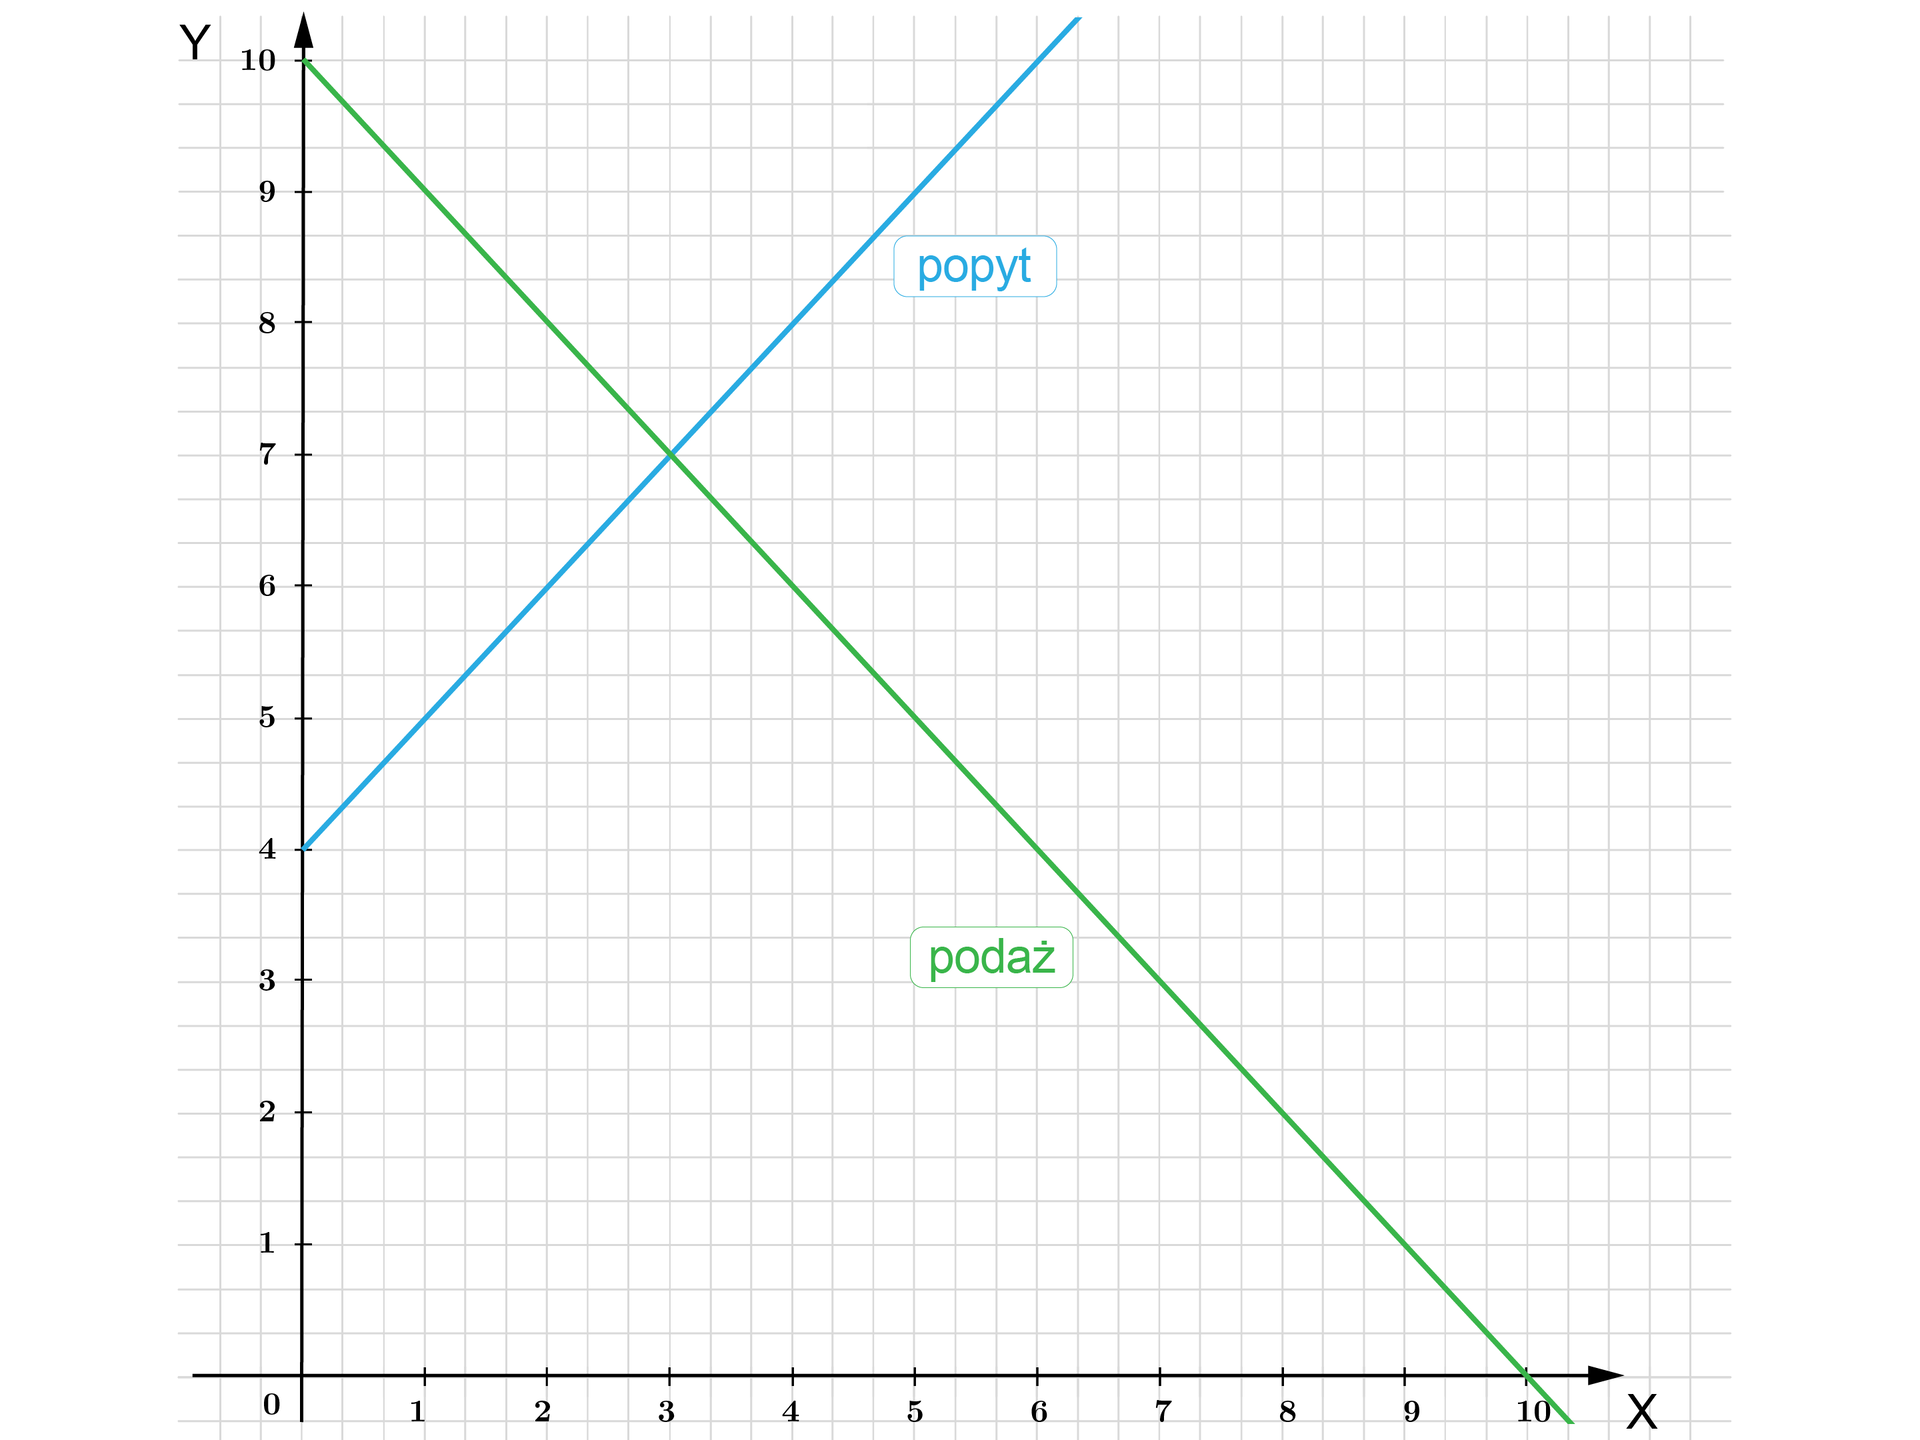 Ilustracja przedstawia poziomą oś X od zera do dziesięciu oraz pionową oś Y od zera do dziesięciu. Na rysunku zaznaczono również dwa wykres funkcji liniowej. Pierwszy wykres określa popyt  i zaczyna się w punkcie nawias zero średnik cztery koniec nawiasu, oraz przechodzi przez punkty nawias dwa średnik sześć koniec nawiasu, nawias pięć średnik dziewięć koniec nawiasu. Drugi wykres określa podaż i zaczyna się w punkcie nawias zero średnik dziesięć koniec nawiasu. Przechodzi również prze punkty nawias dwa średnik osiem koniec nawiasu, nawias pięć średnik pięć koniec nawiasu, nawias siedem średnik  trzy koniec nawiasu. Oba wykresy przecinają się w punkcie nawias trzy średnik siedem koniec nawiasu. 